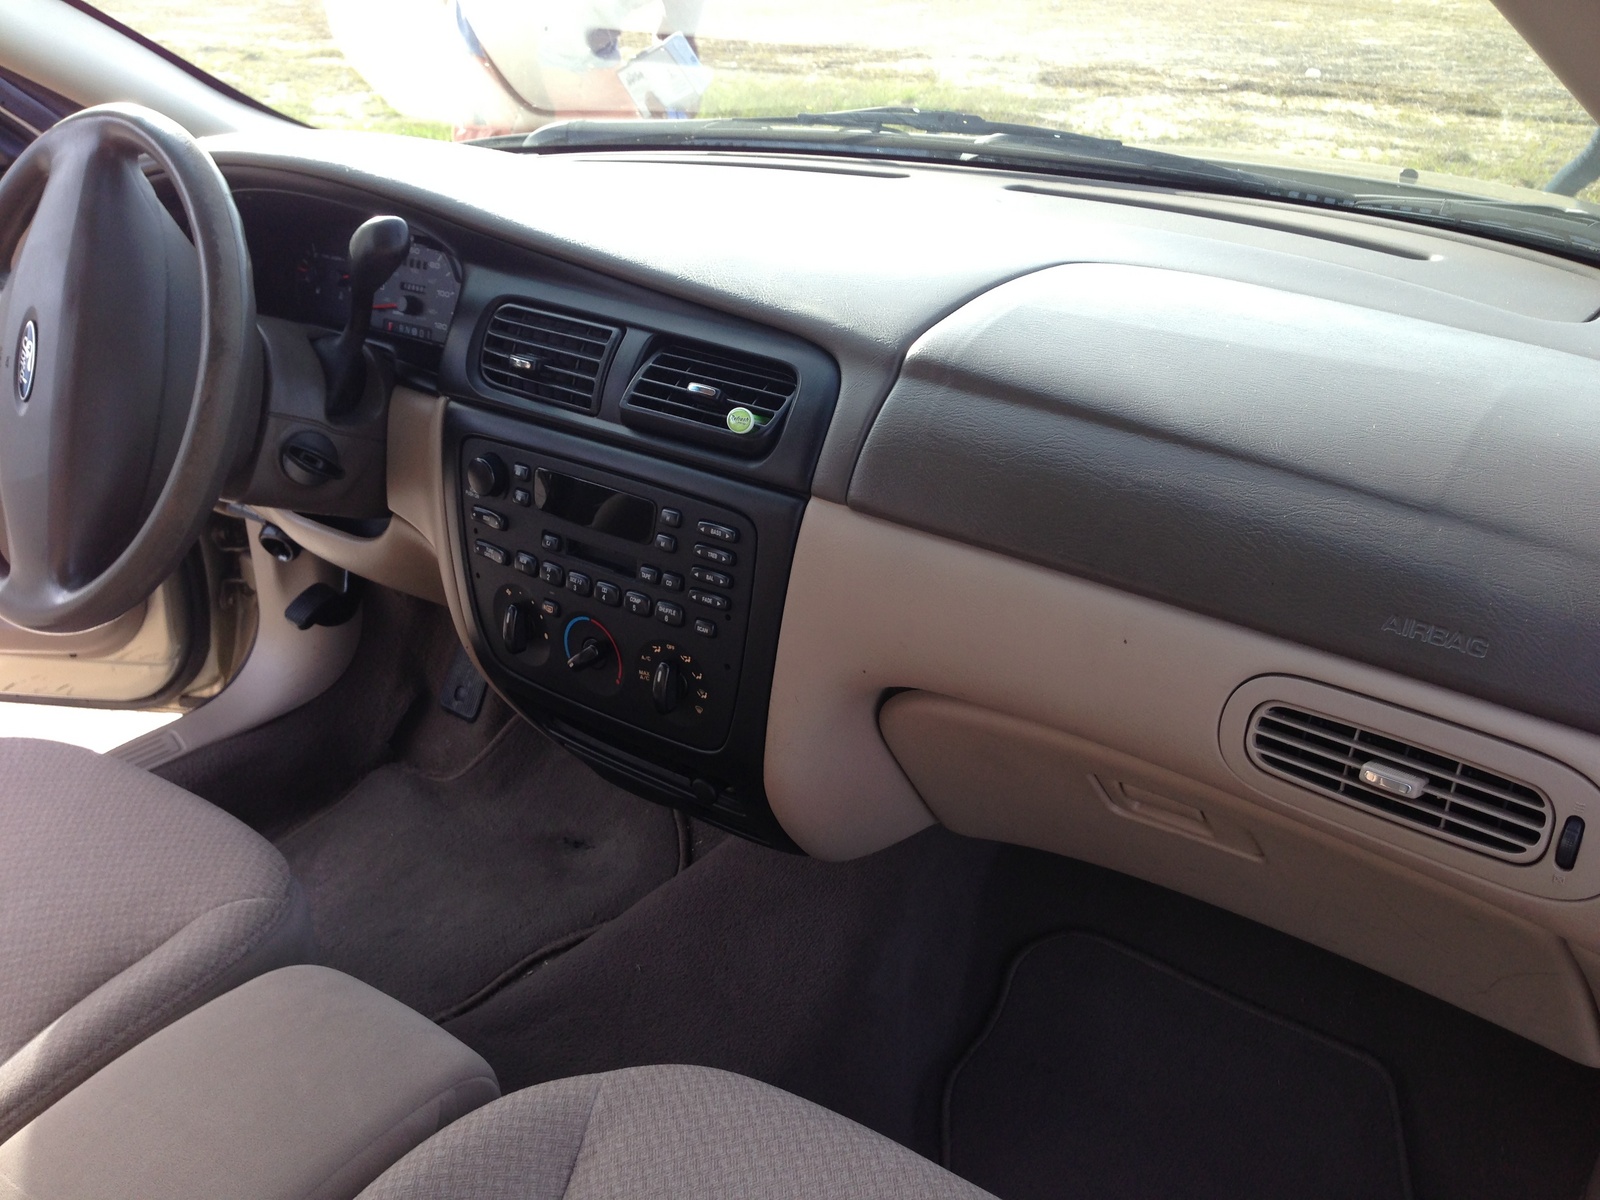 2000 Ford taurus interior #7